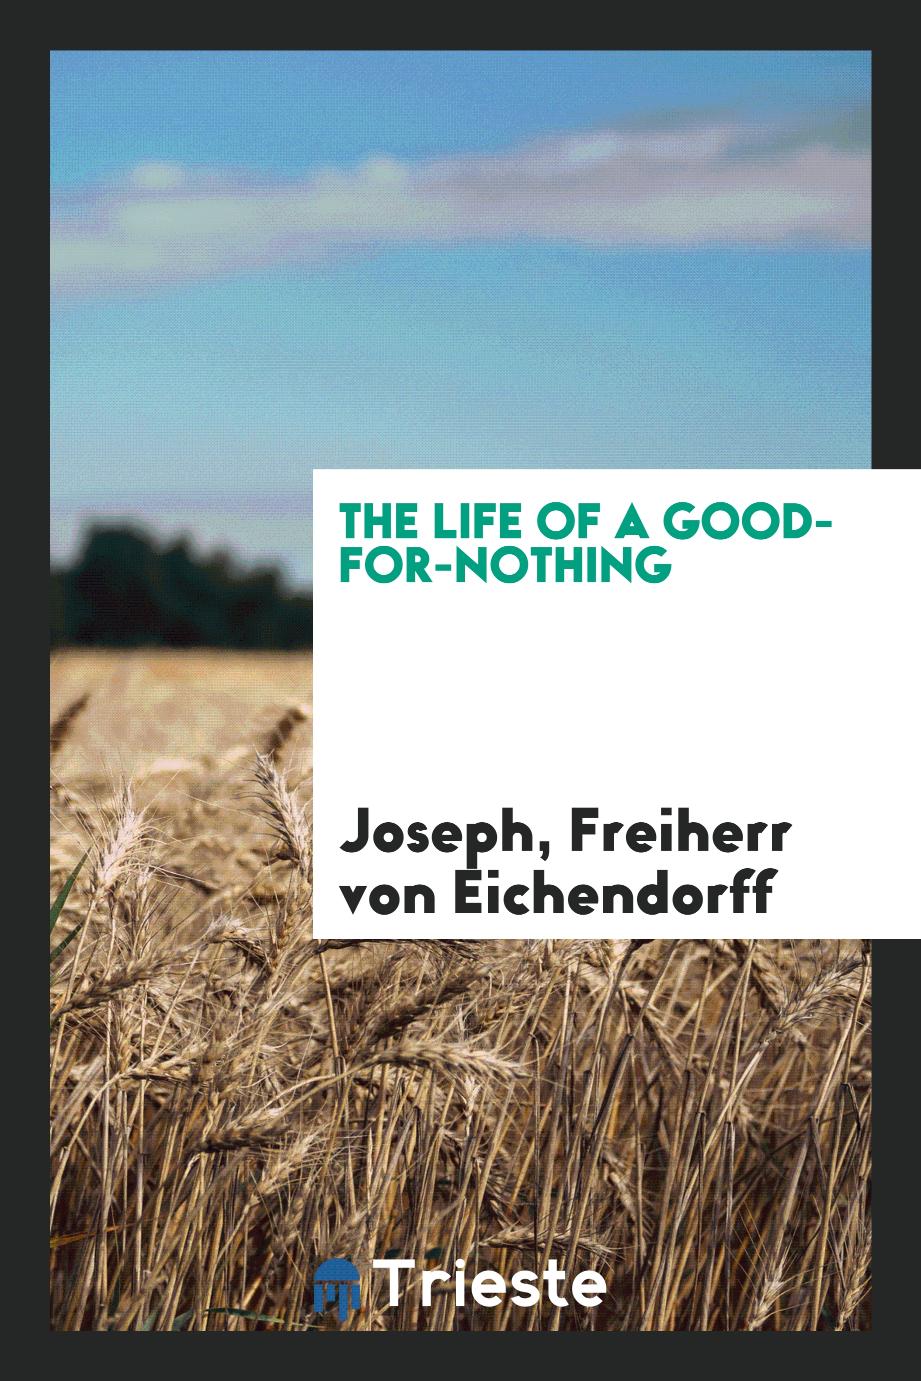 Freiherr von Joseph Eichendorff - The life of a good-for-nothing